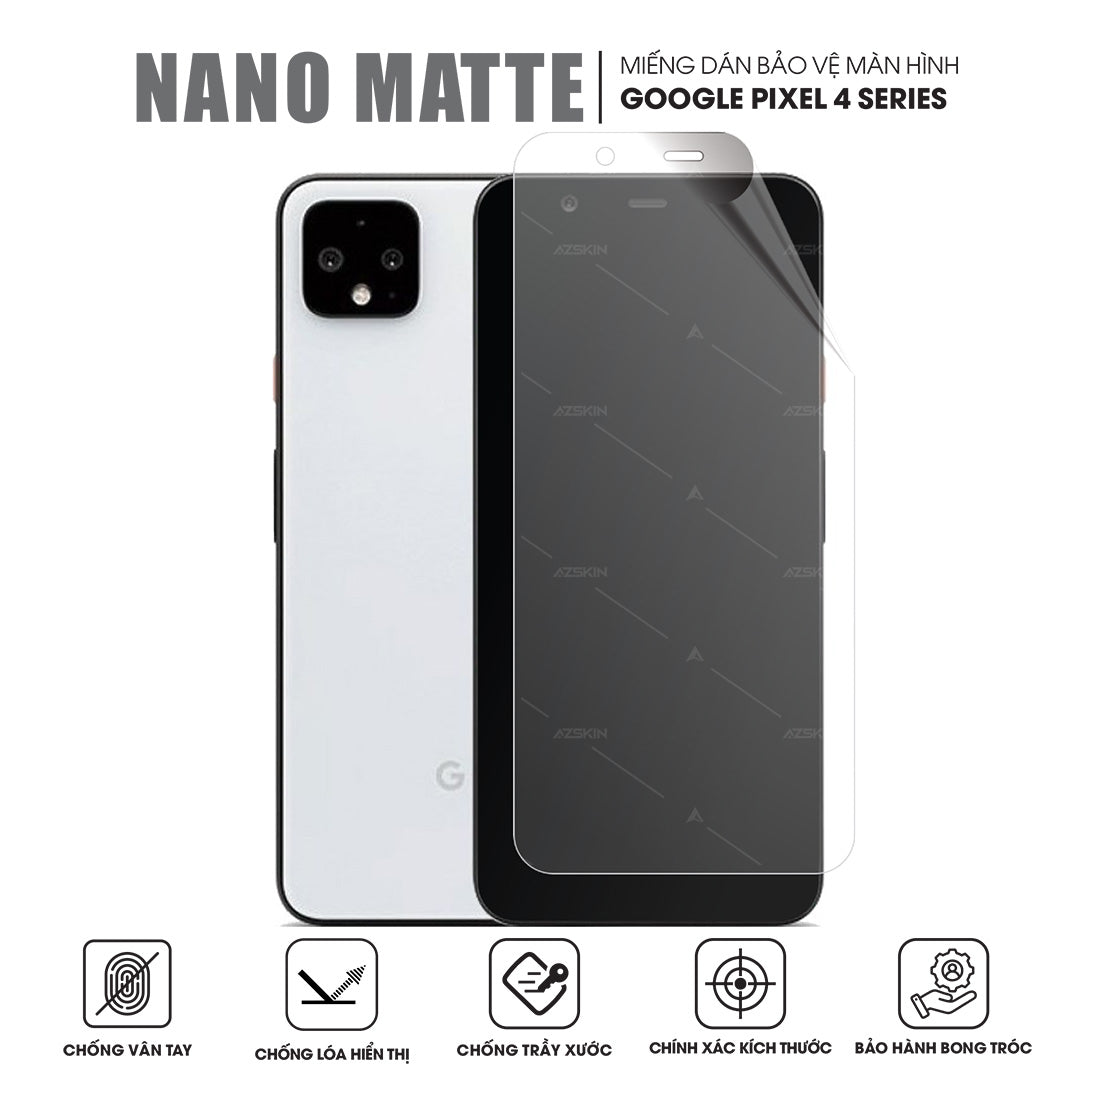 Miếng dán màn hình Nano Matte chống vân tay cho Google Pixel 4